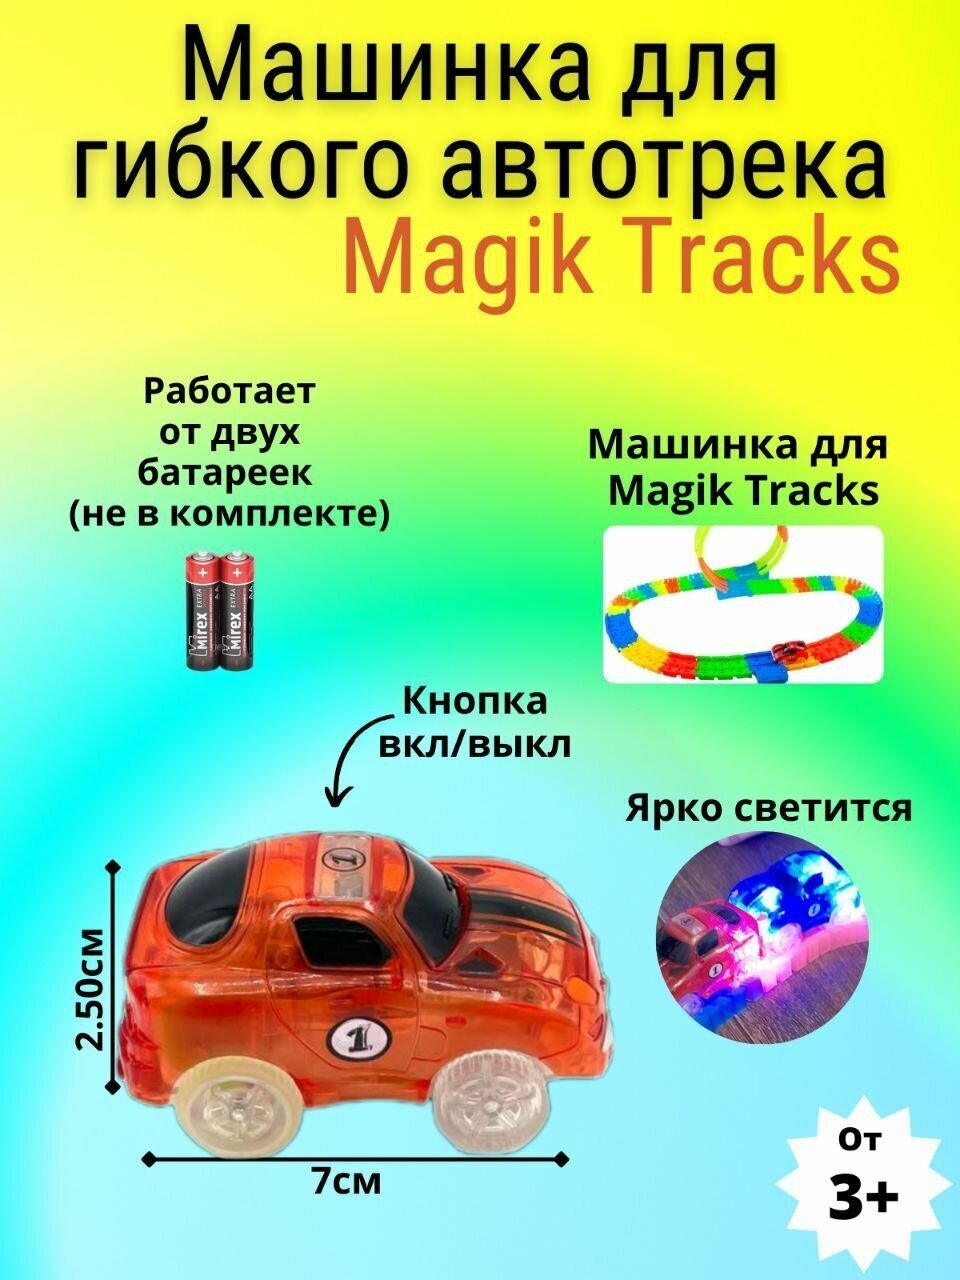 Машинка для Трассы MAGIC TRACKS красного цвета / Мэйджик трек и дополнительная машинка